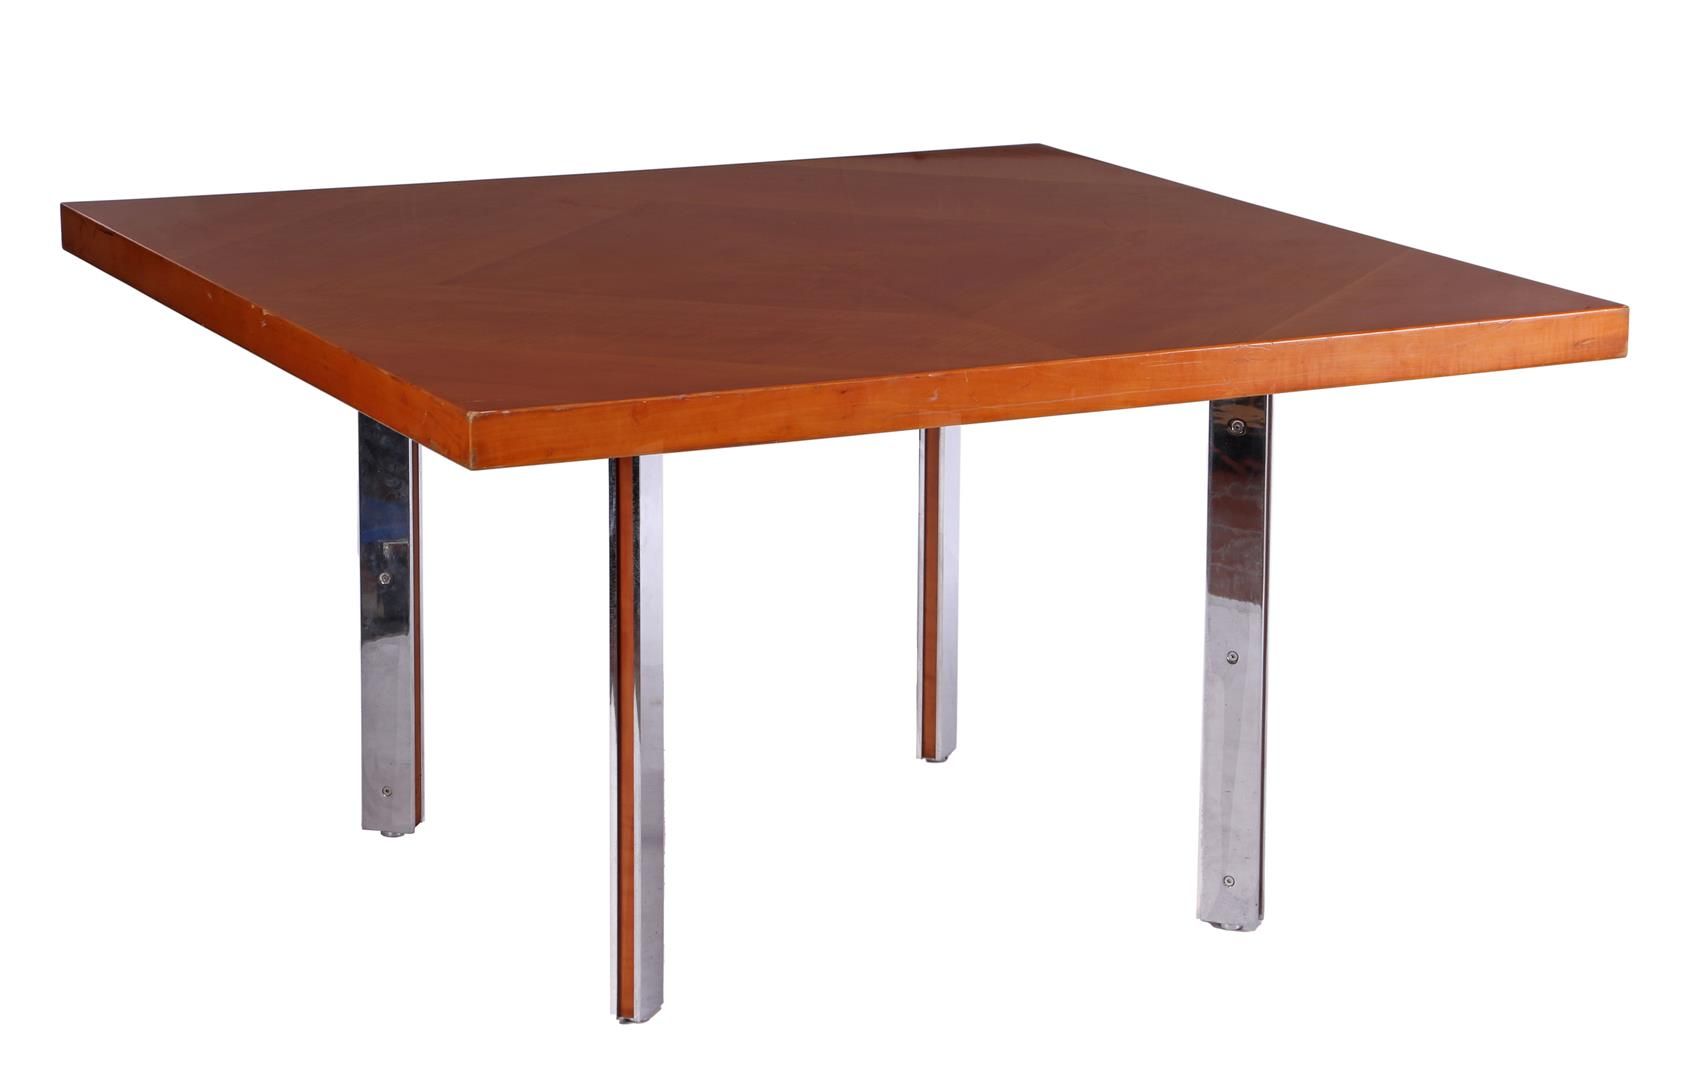 Null 会议桌或餐桌，梨木饰面桌面，镀铬金属桌腿，饰以饰面，由 Gordon Russell Ltd. Broadway Works 制作，桌面下方标有 "B&hellip;